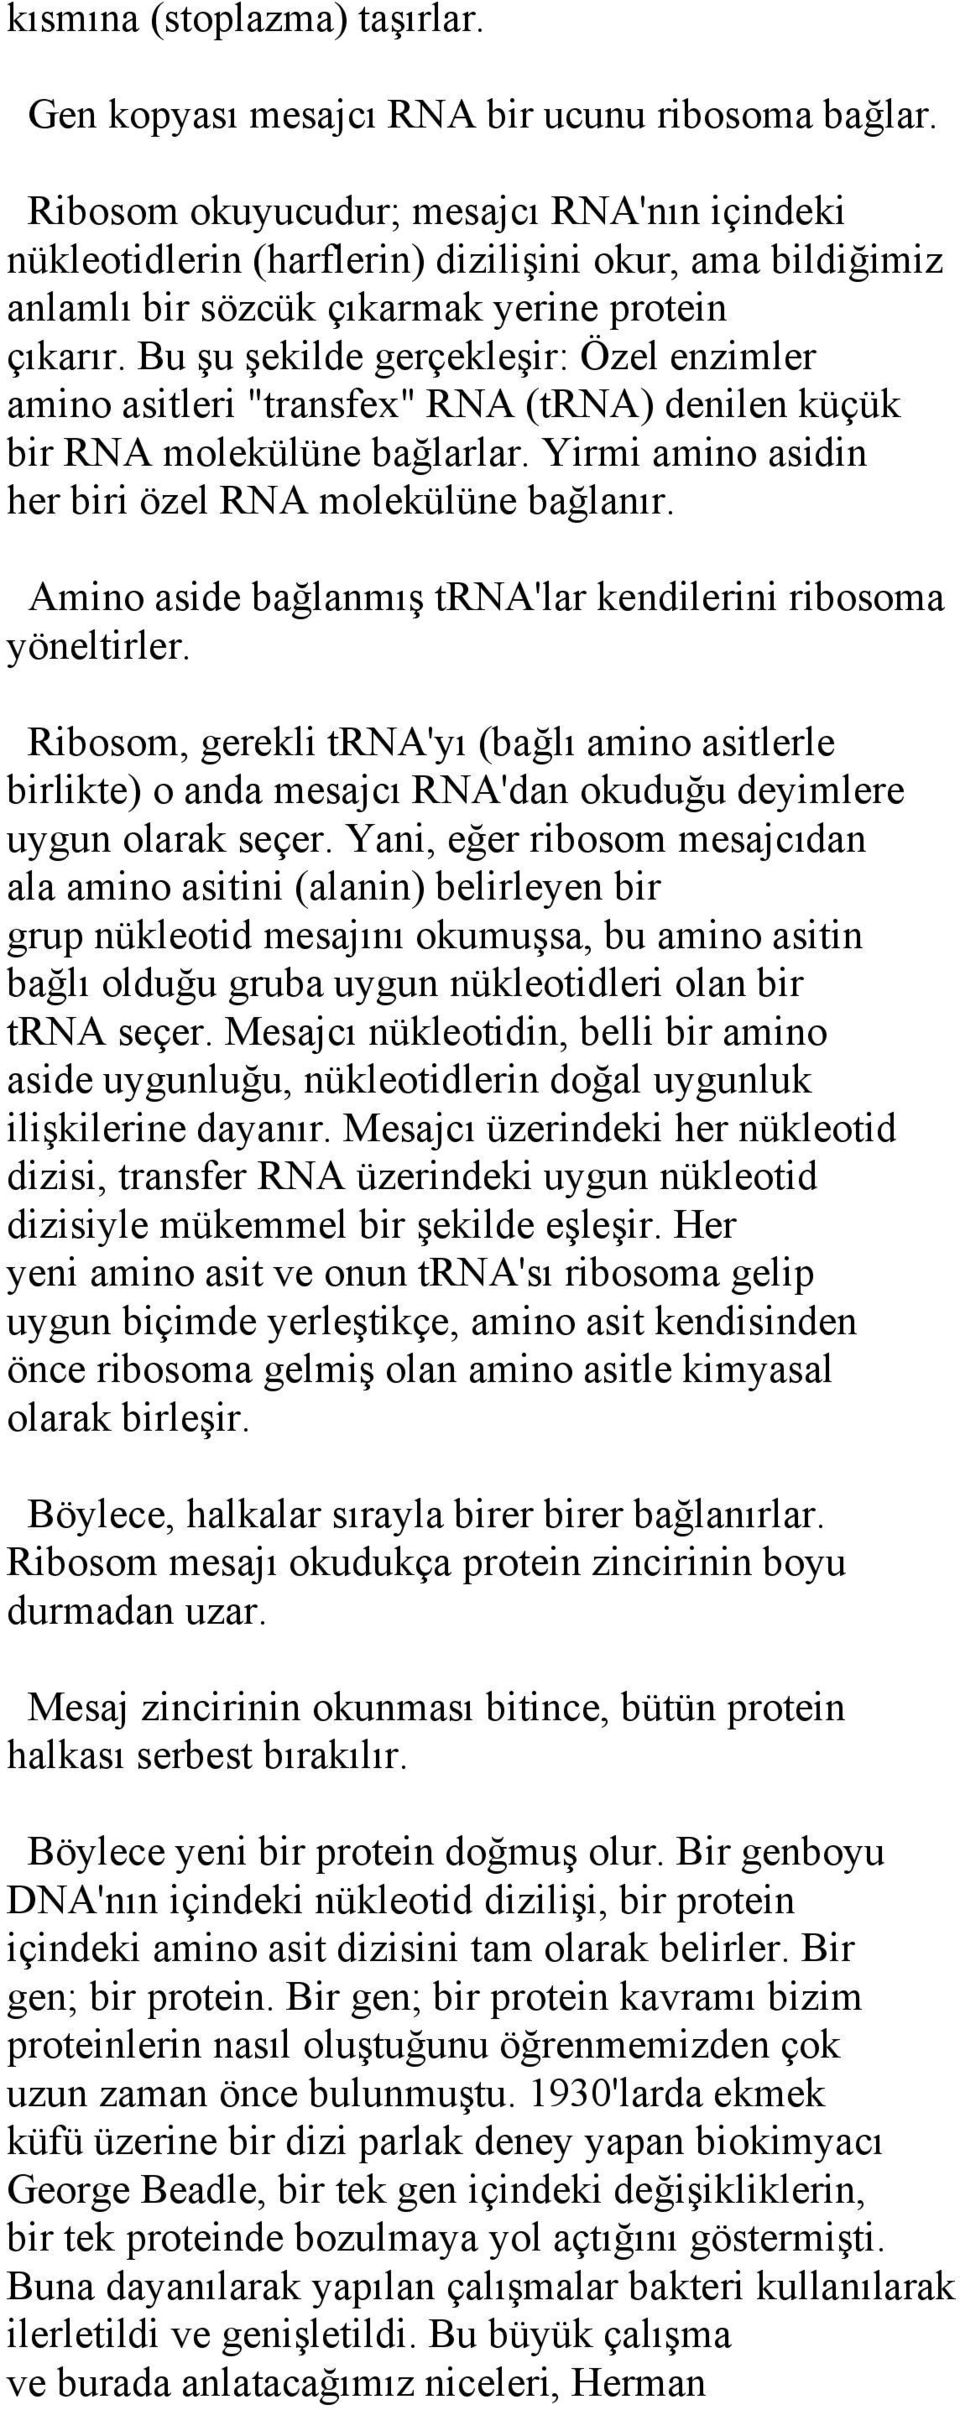 Bu şu şekilde gerçekleşir: Özel enzimler amino asitleri "transfex" RNA (trna) denilen küçük bir RNA molekülüne bağlarlar. Yirmi amino asidin her biri özel RNA molekülüne bağlanır.